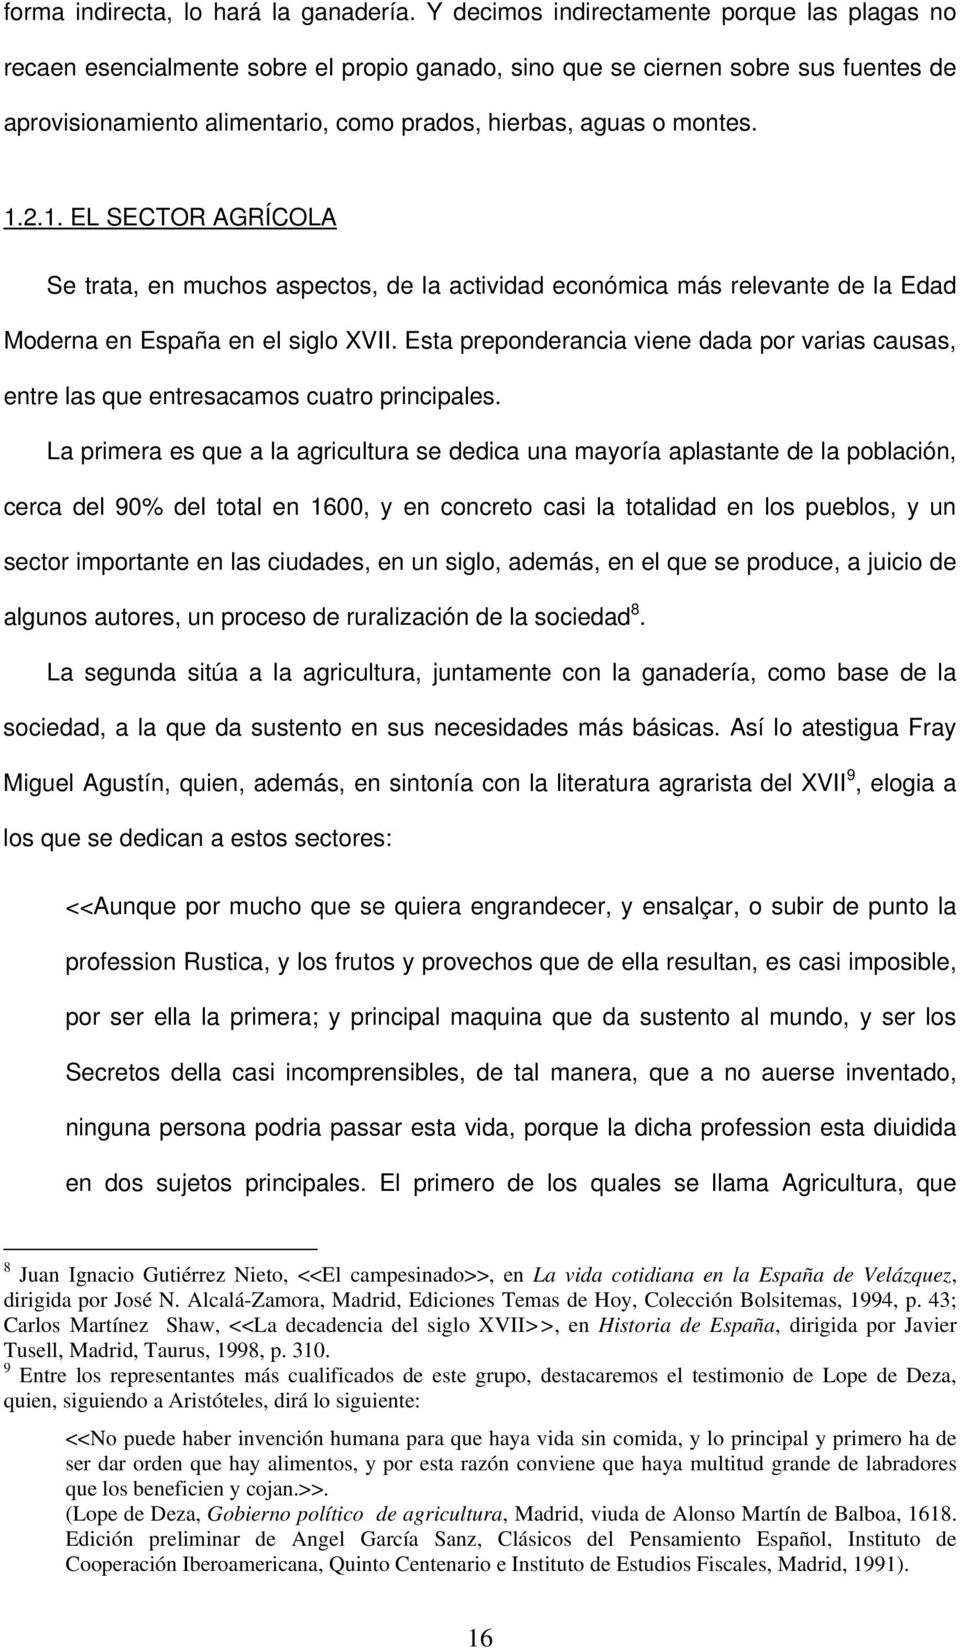 1.2.1. EL SECTOR AGRÍCOLA Se trata, en muchos aspectos, de la actividad económica más relevante de la Edad Moderna en España en el siglo XVII.